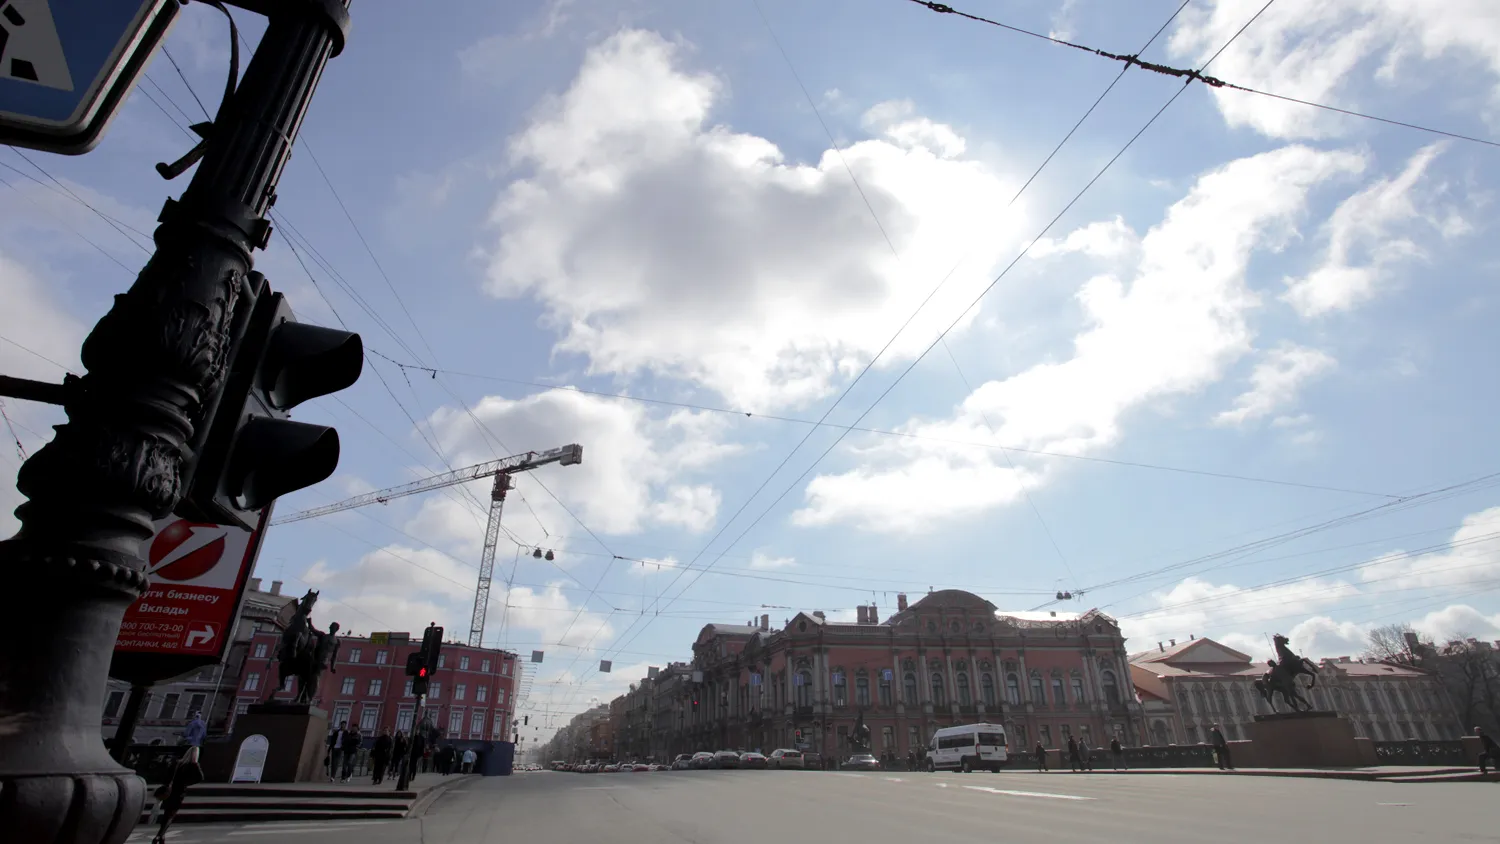 Порядок предоставления недвижимости, находящейся в собственности Санкт-Петербурга, будет изменен